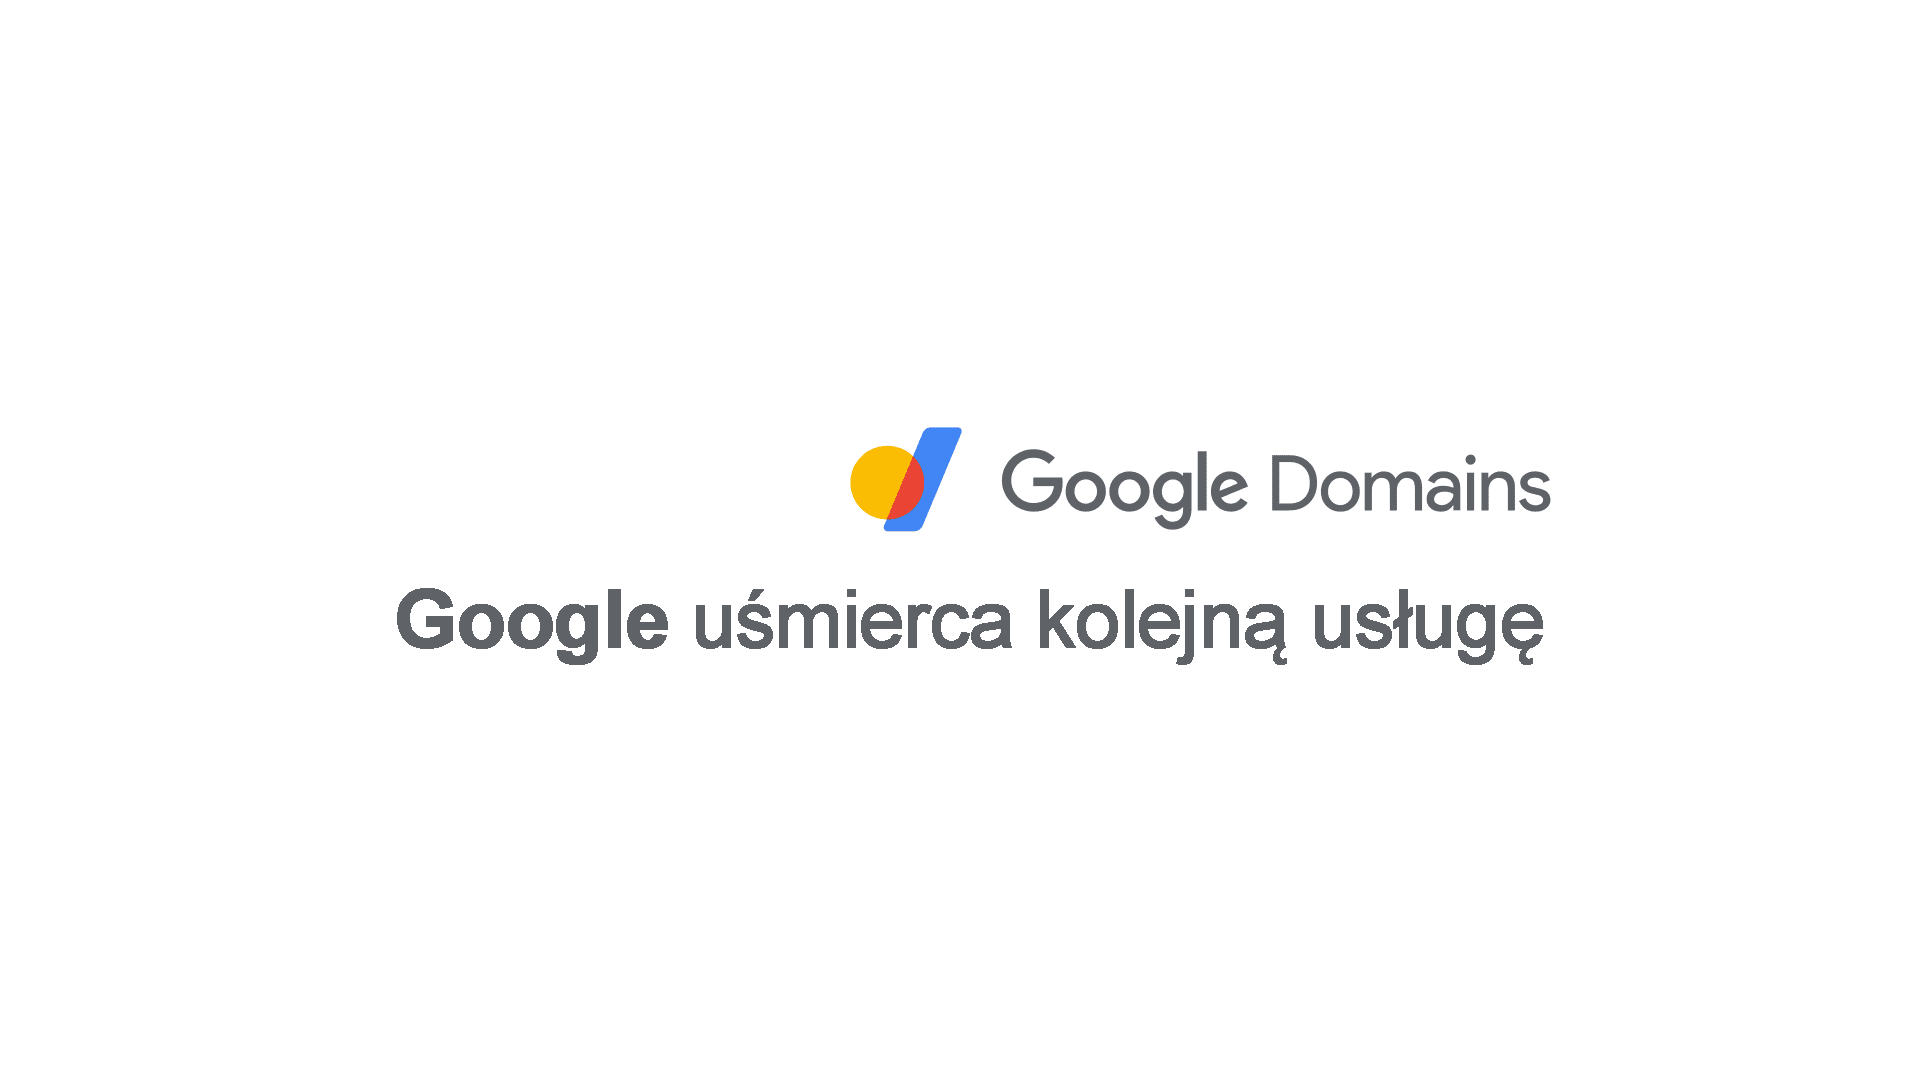 Google uśmierca kolejną usługę, tym razem Domeny Google (Google Domains)